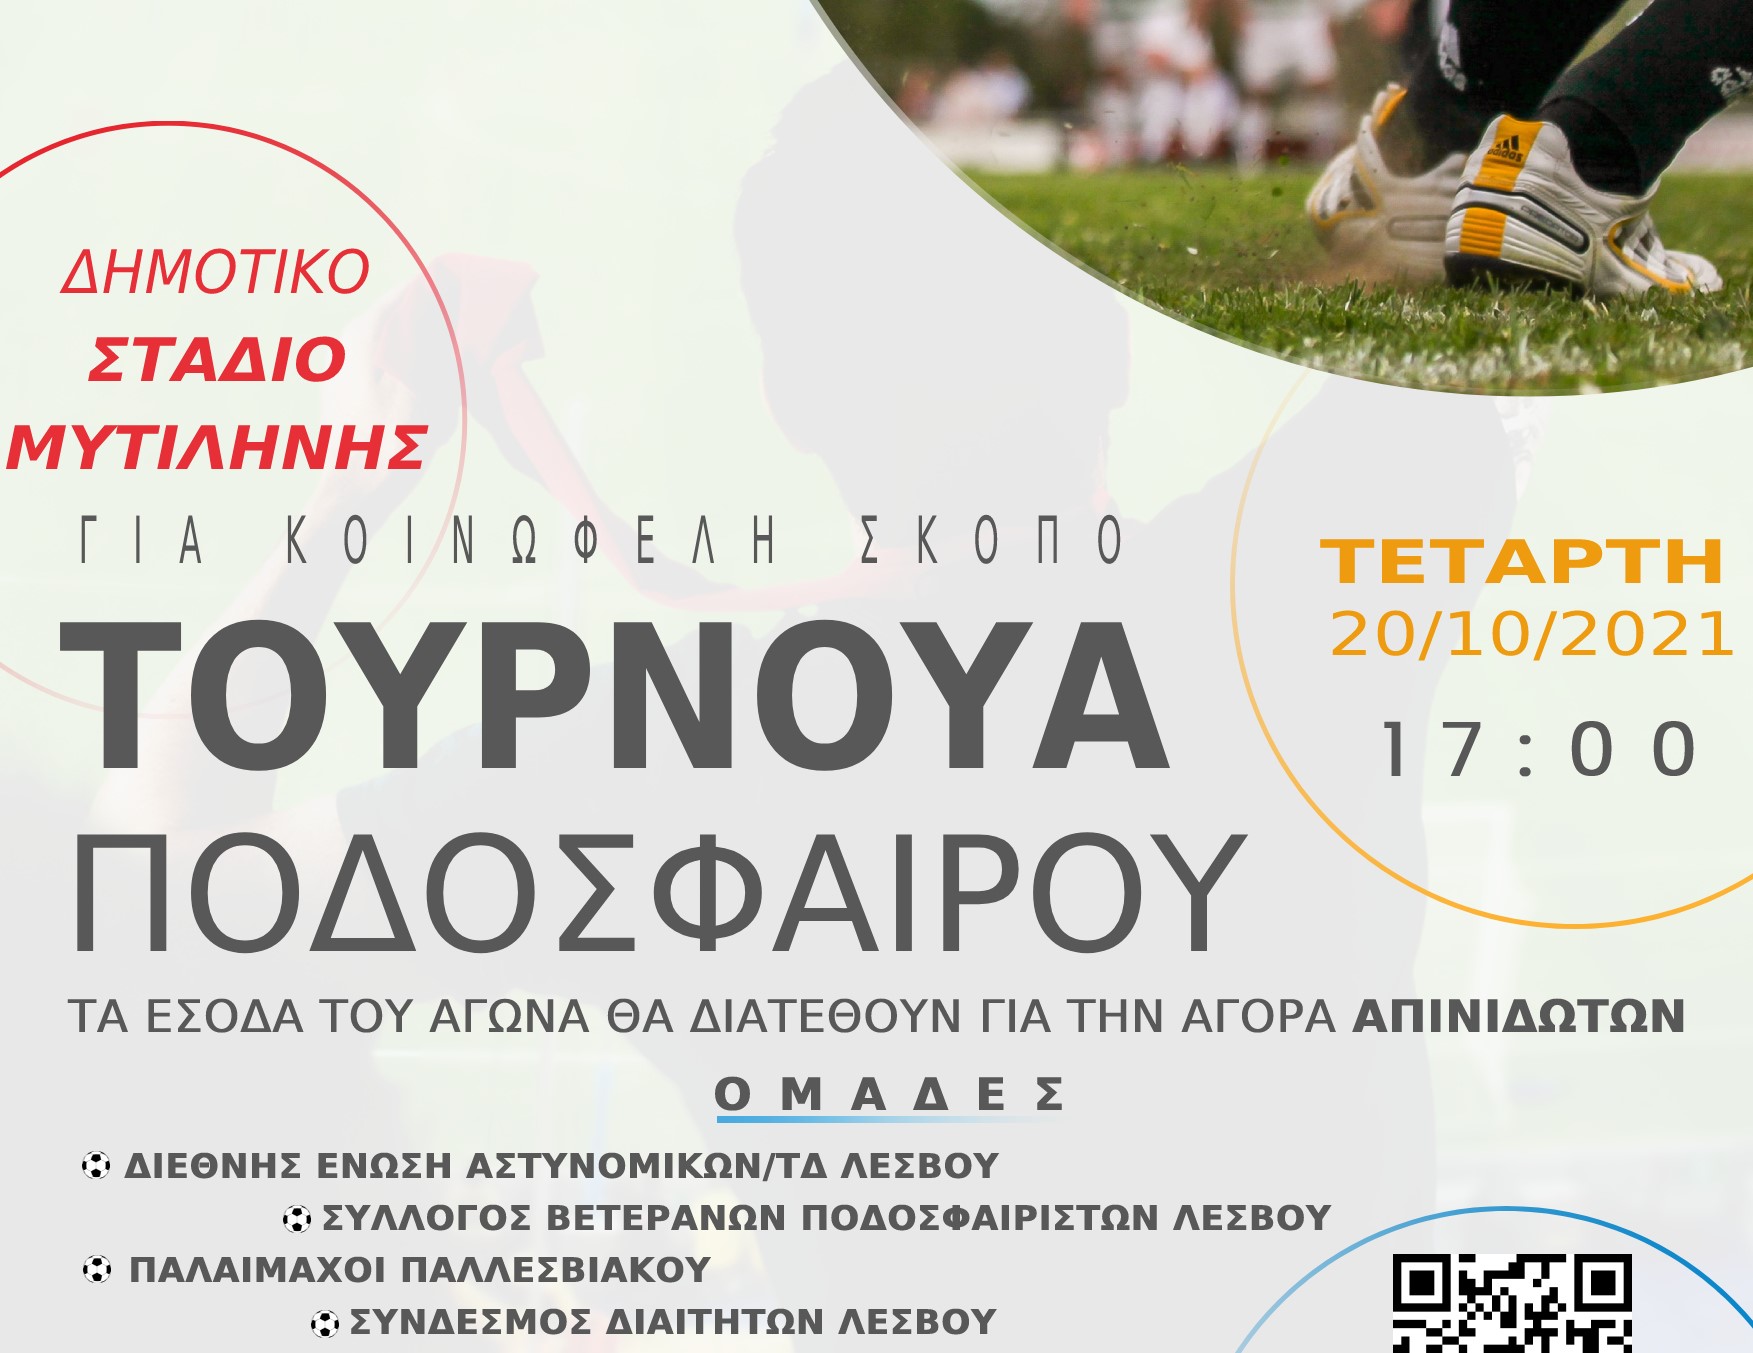 Τουρνουά Ποδοσφαίρου με κοινωφελή σκοπό την Τετάρτη 20 Οκτωβρίου στο Δημοτικό Στάδιο Μυτιλήνης